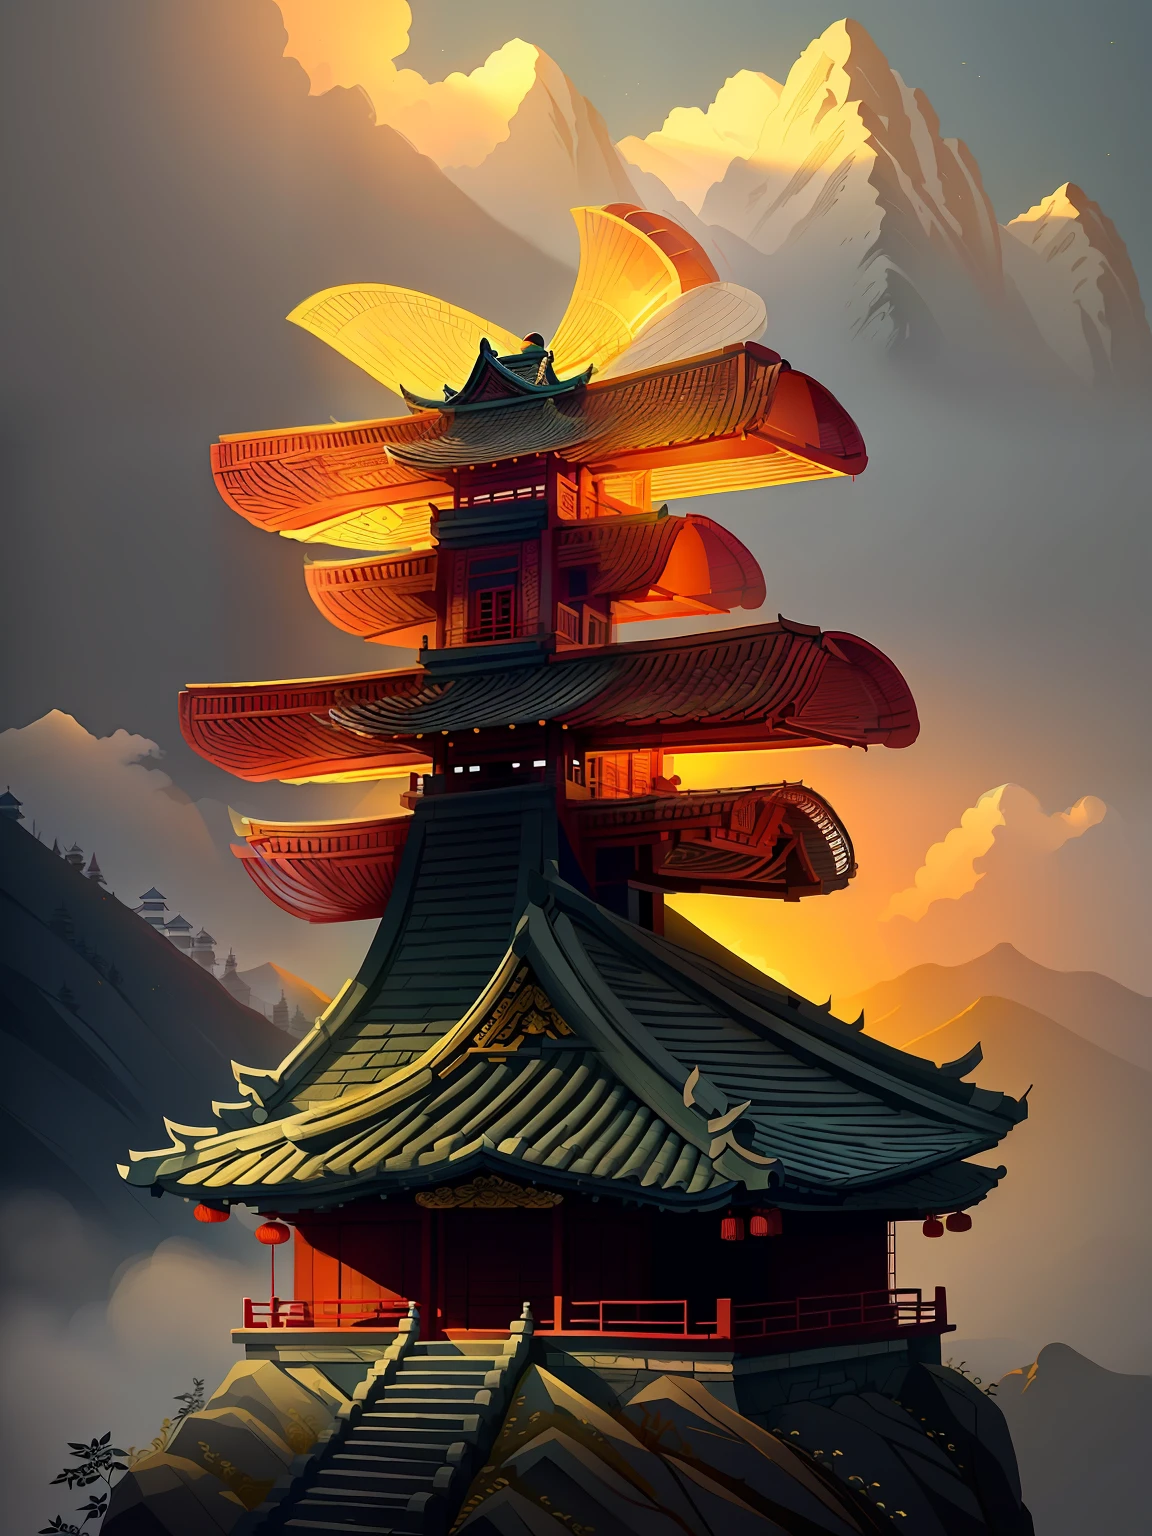 Edificios de estilo chino en las montañas
(((Obra maestra))), (((mejor calidad))), ((ultra detallado)),(luz detallada),((un extremadamente delicado y hermoso)),